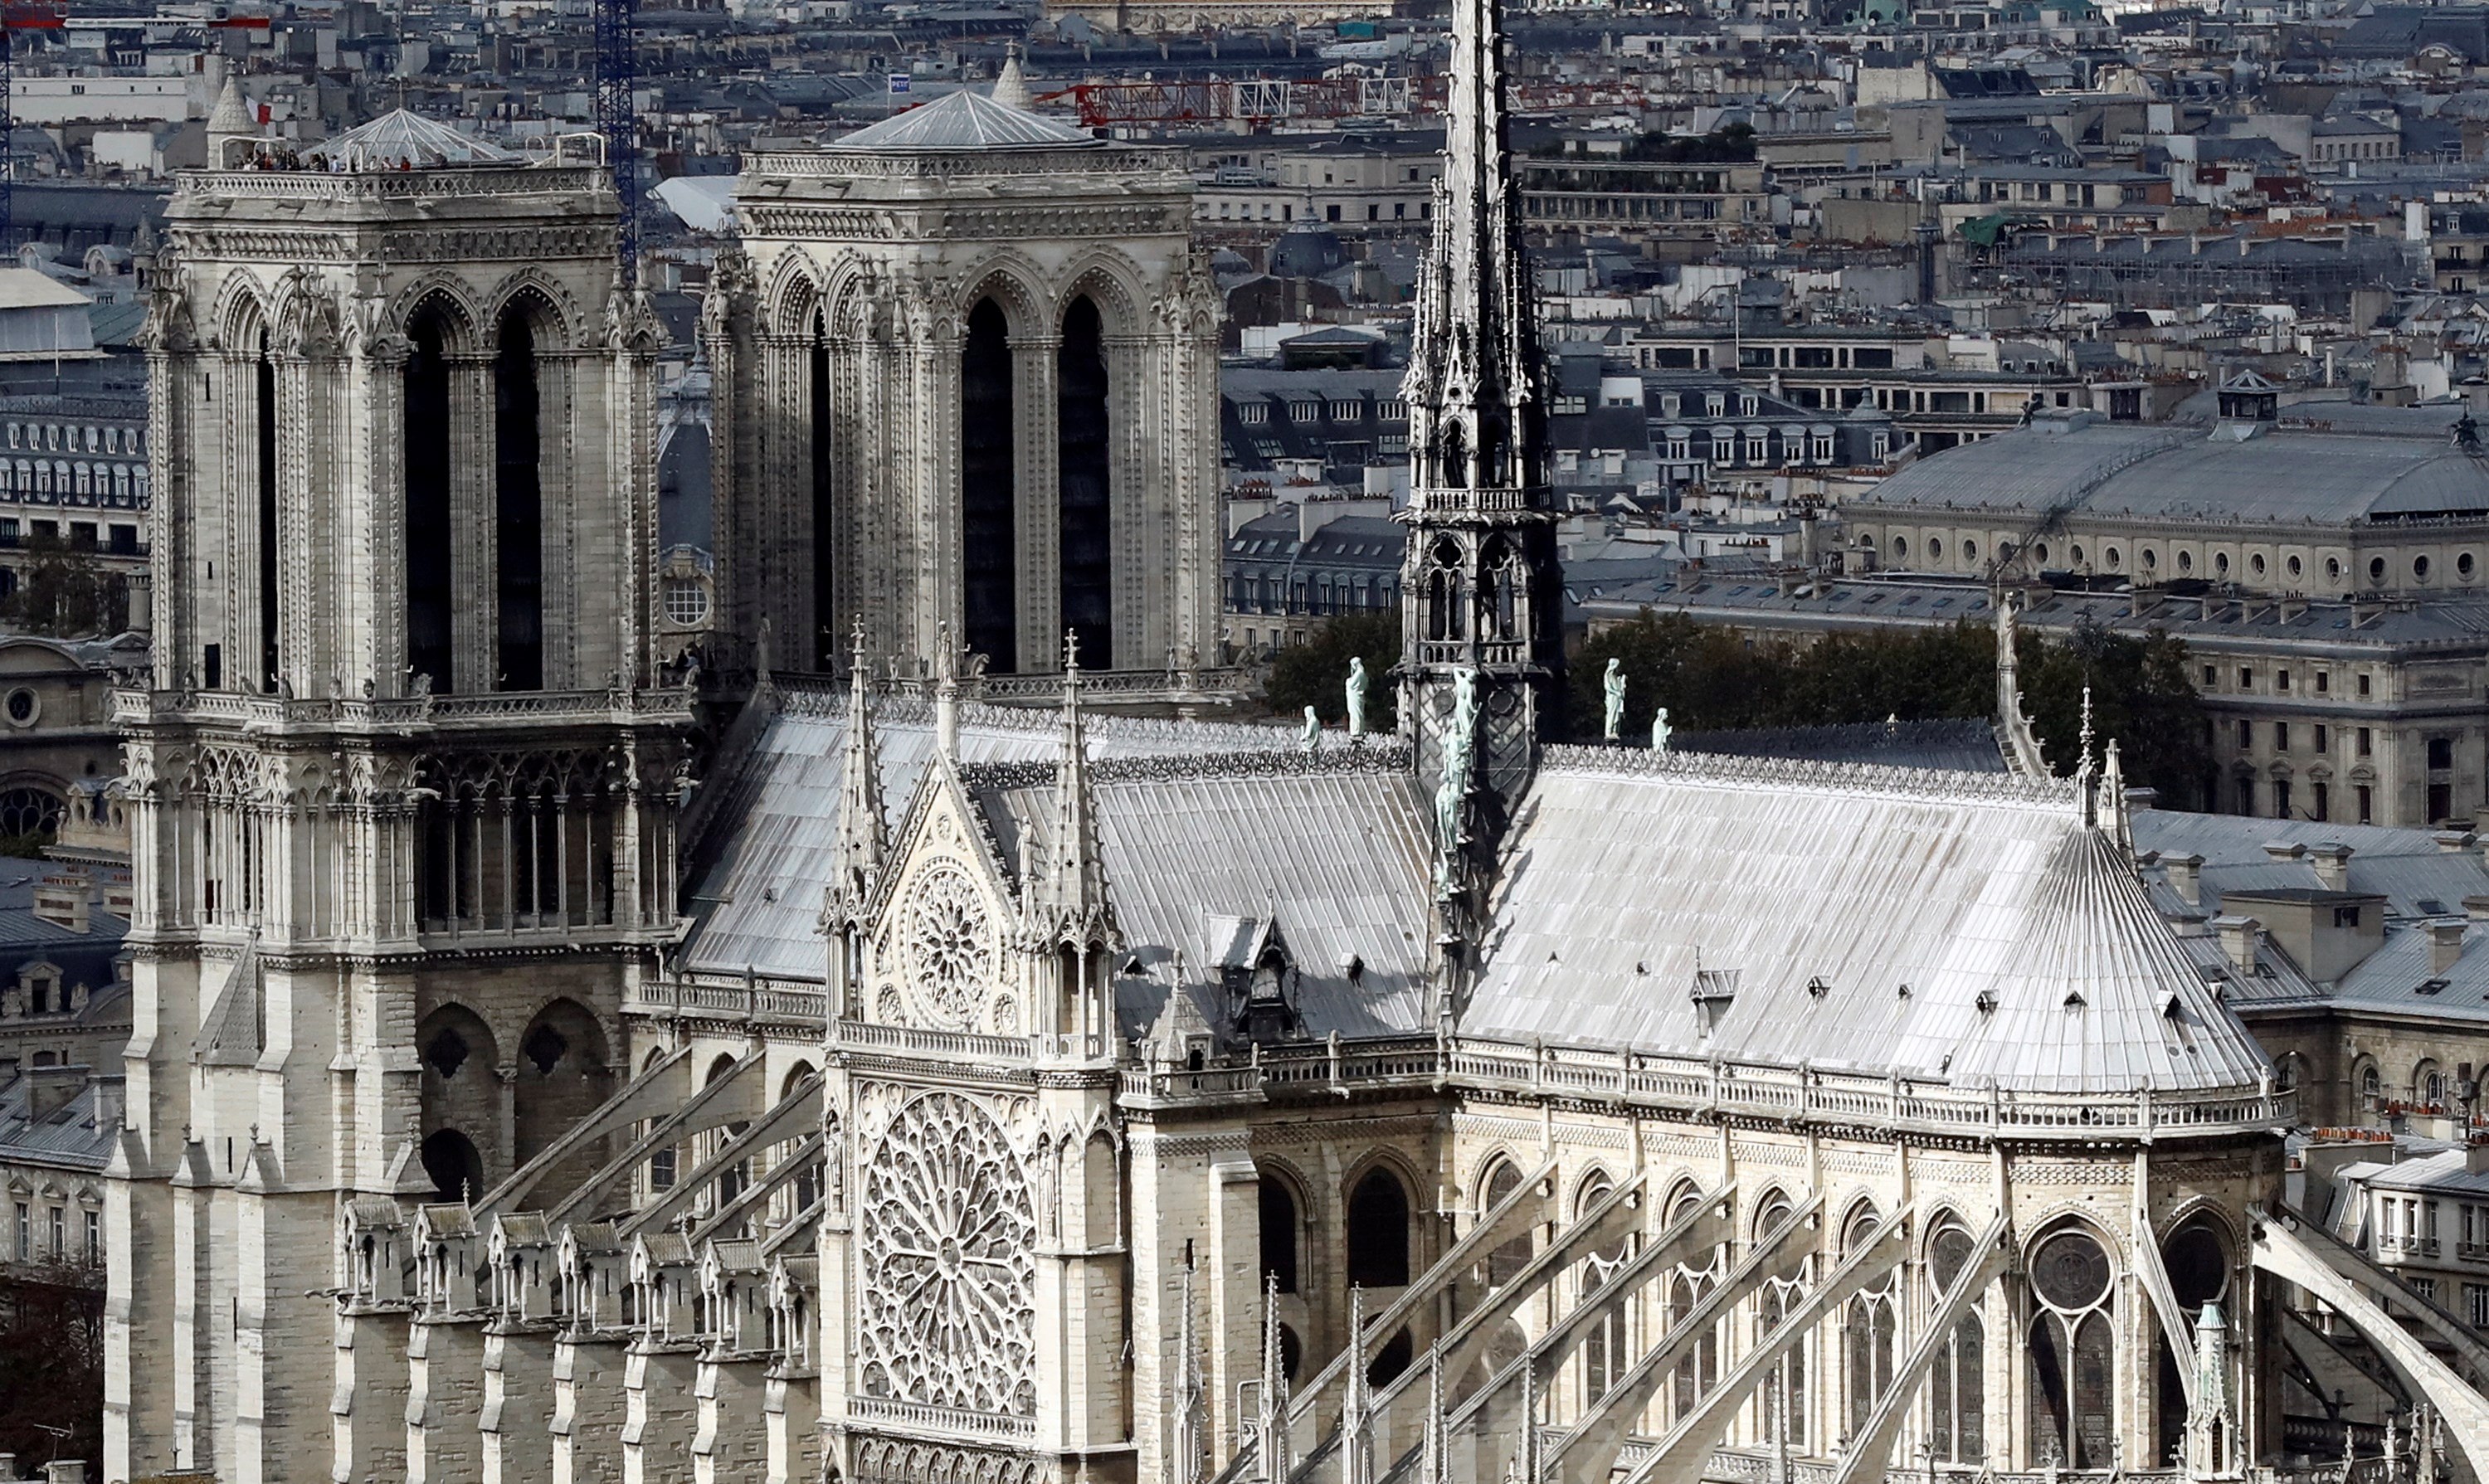 Qué significado tiene la Catedral de Notre Dame?